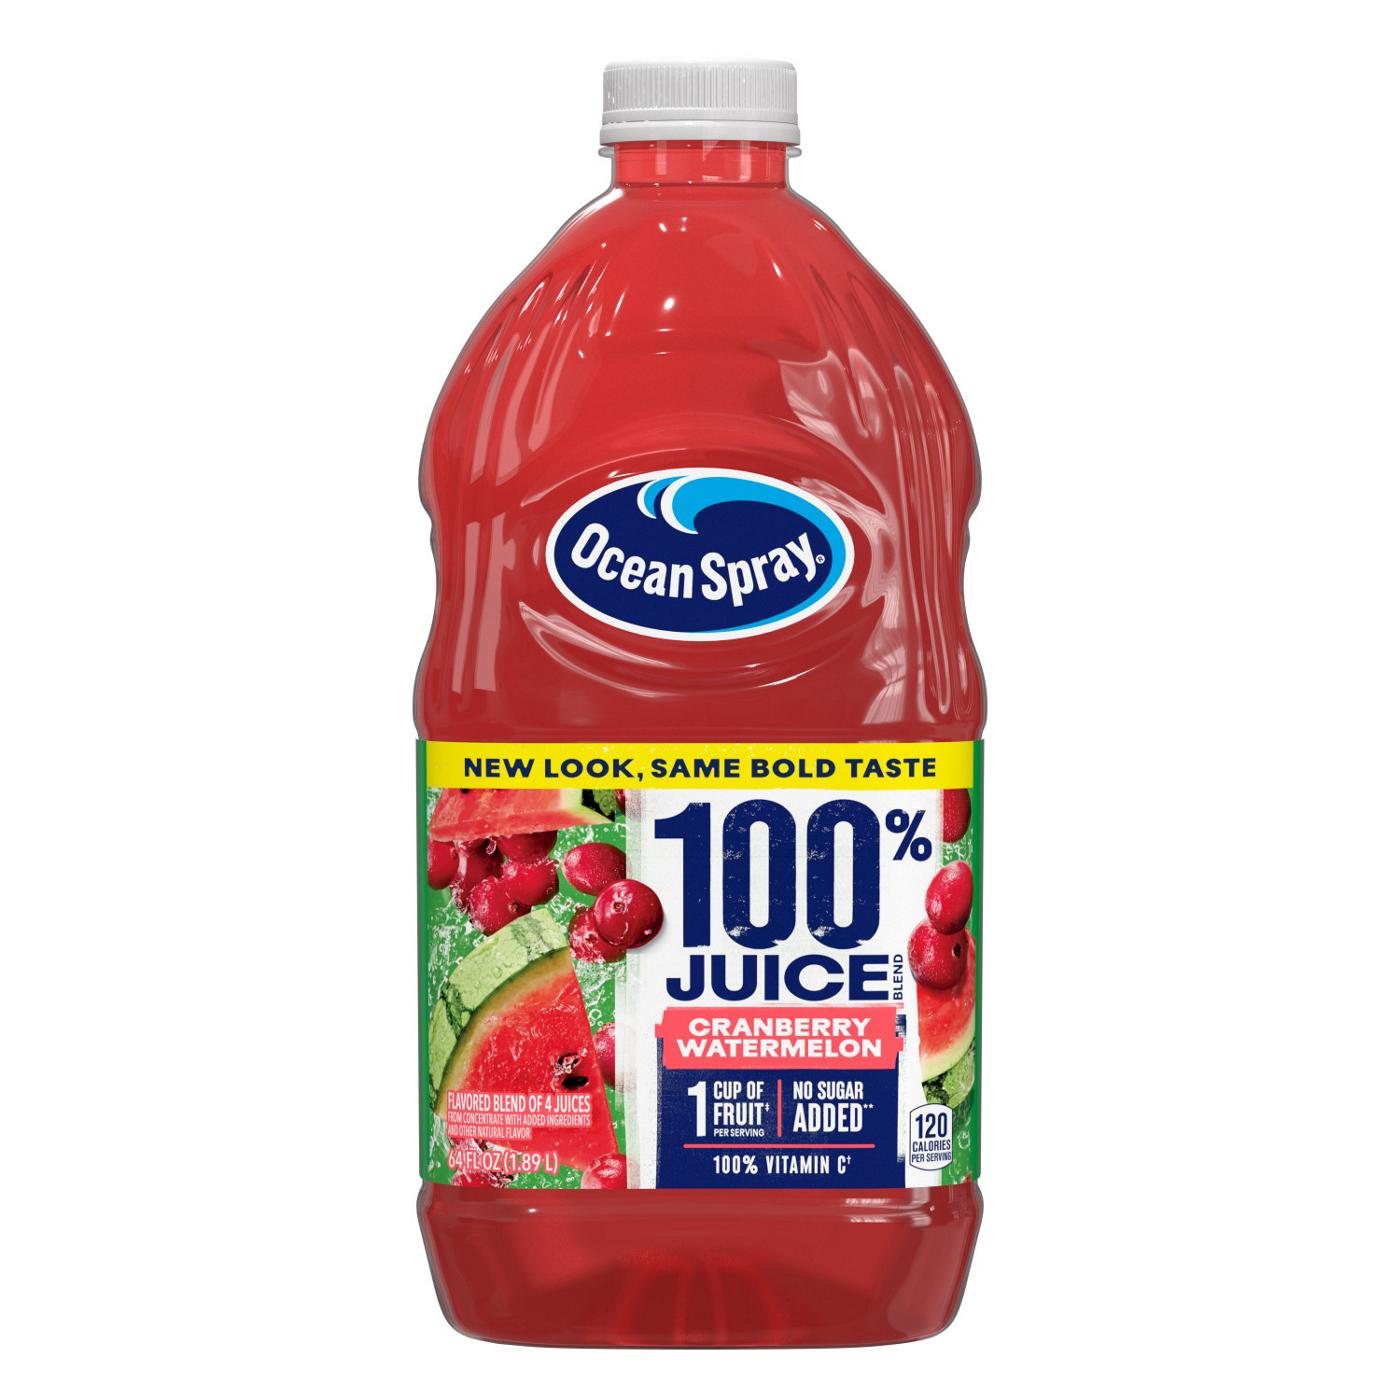 Ocean Spray No Sugar Added 100% Juice Cranberry Watermelon Juice Drink; image 1 of 6